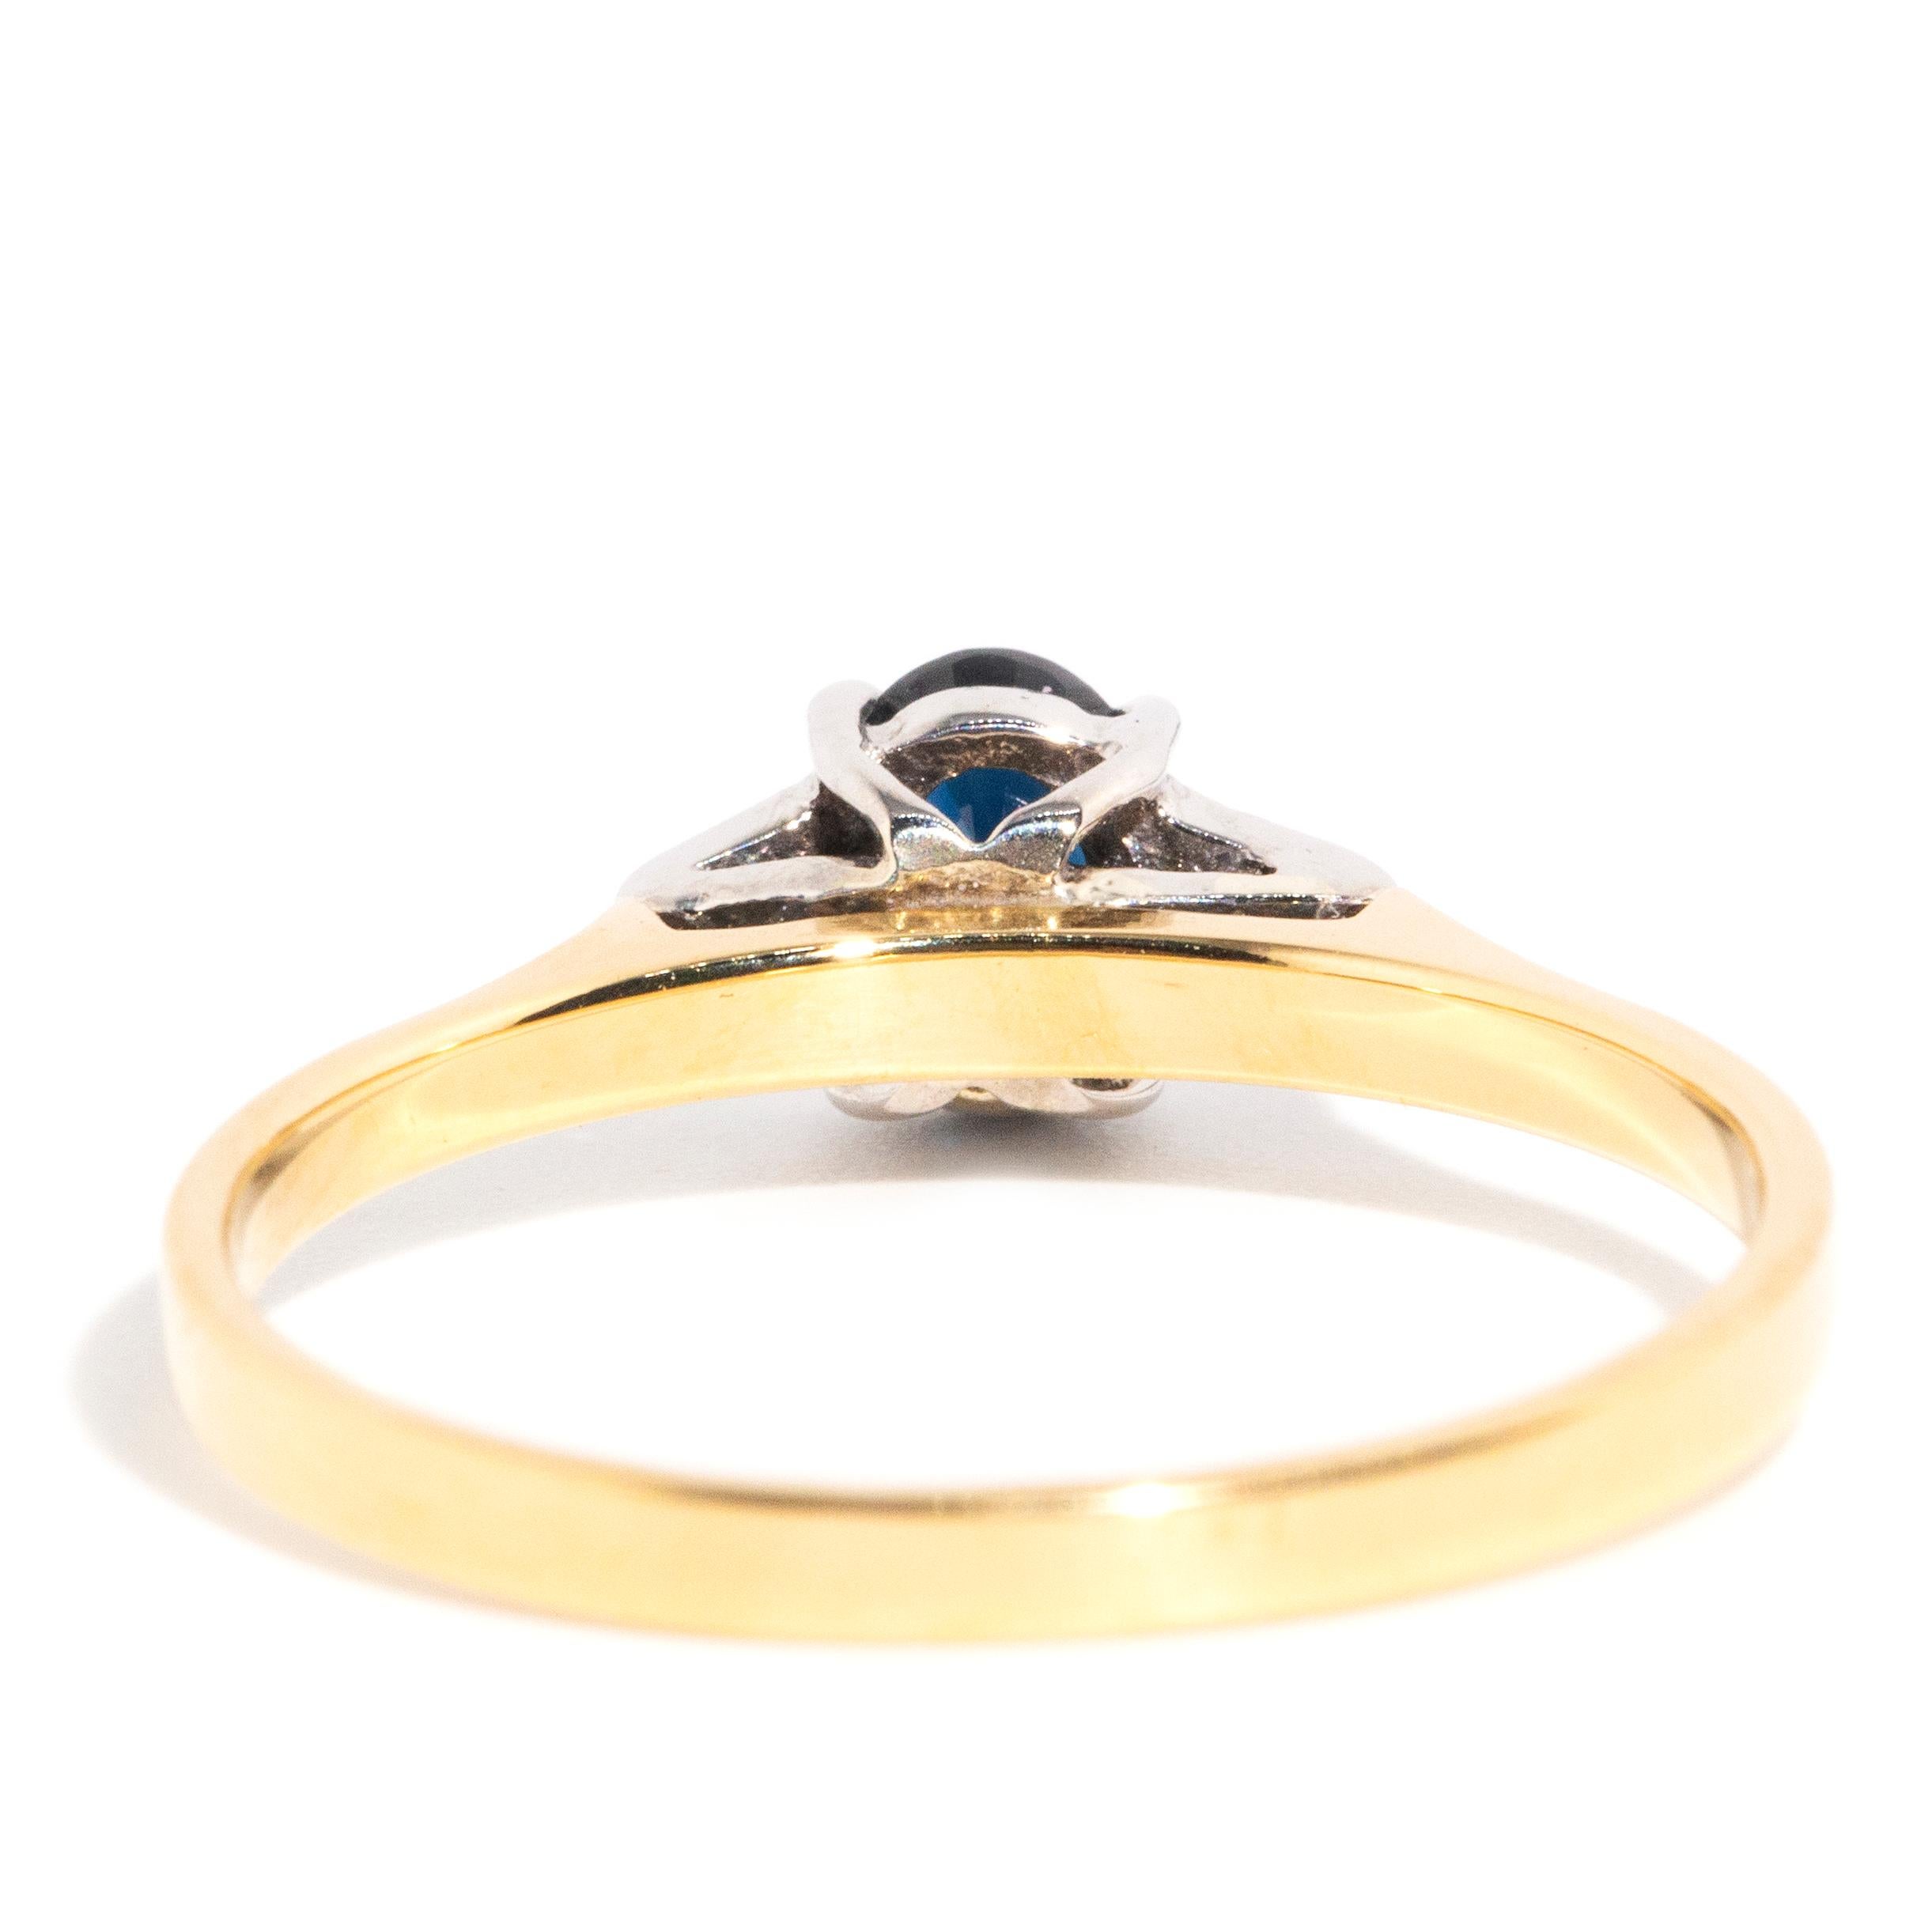 Vintage circa 1990s 18 Carat Gold Diamond & Deep Blue Sapphire Three Stone Ring 3